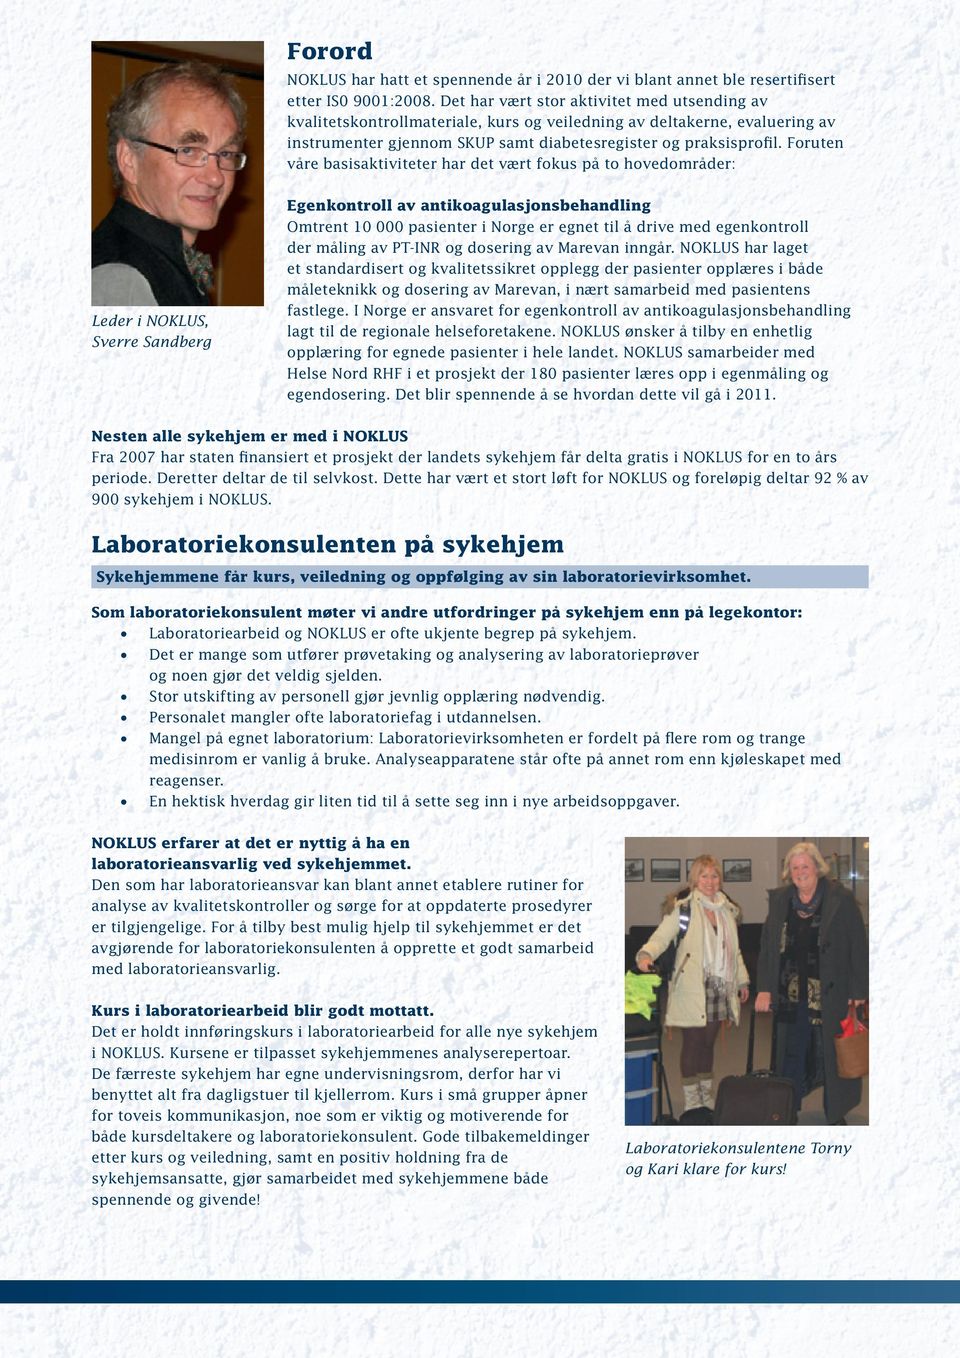 Foruten våre basisaktiviteter har det vært fokus på to hovedområder: Leder i NOKLUS, Sverre Sandberg Egenkontroll av antikoagulasjonsbehandling Omtrent 10 000 pasienter i Norge er egnet til å drive